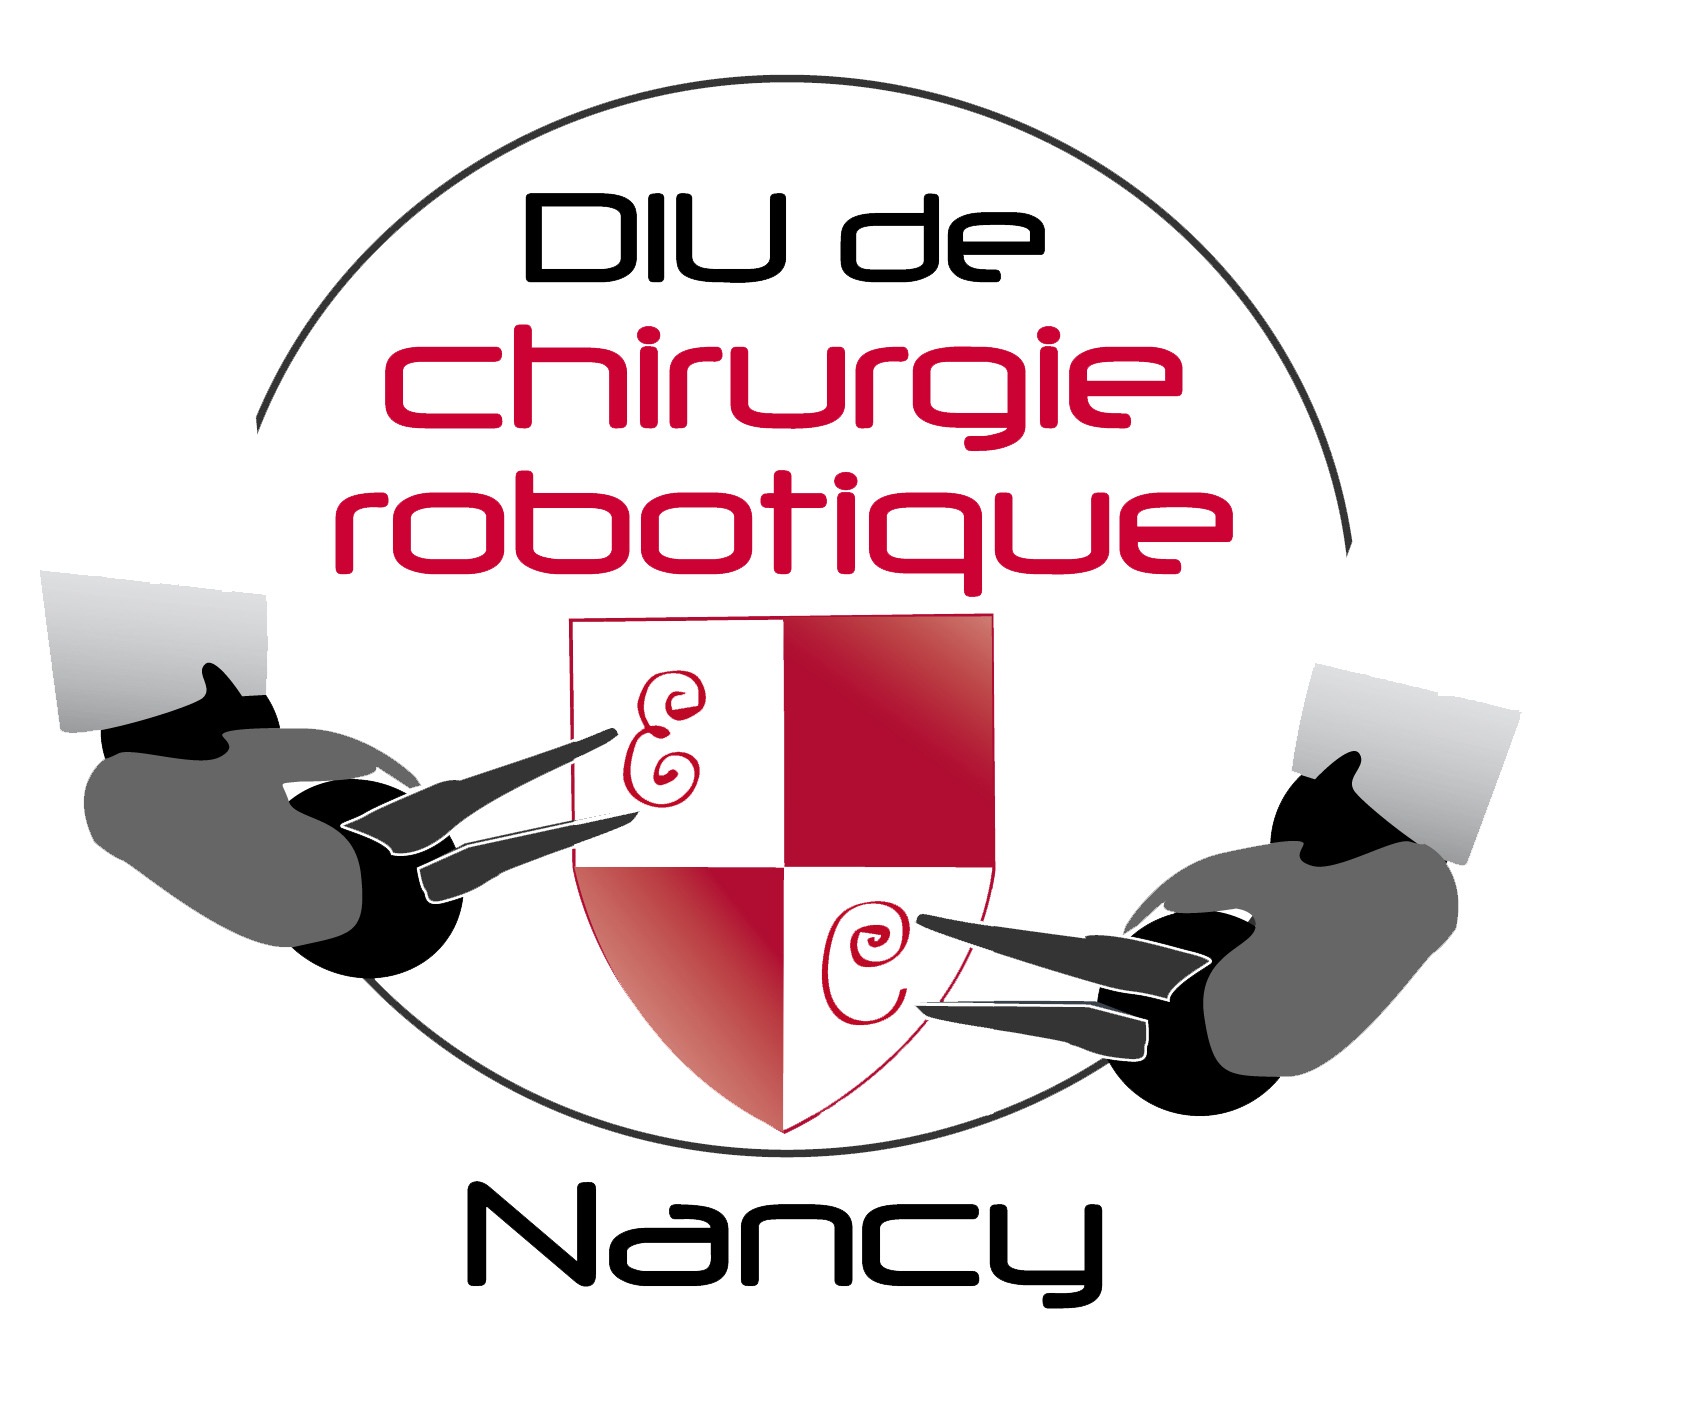 DIU de chirurgie robotique Nancy 2014 : Bilan pré-opératoire d’une chirurgie robotisée en urologie